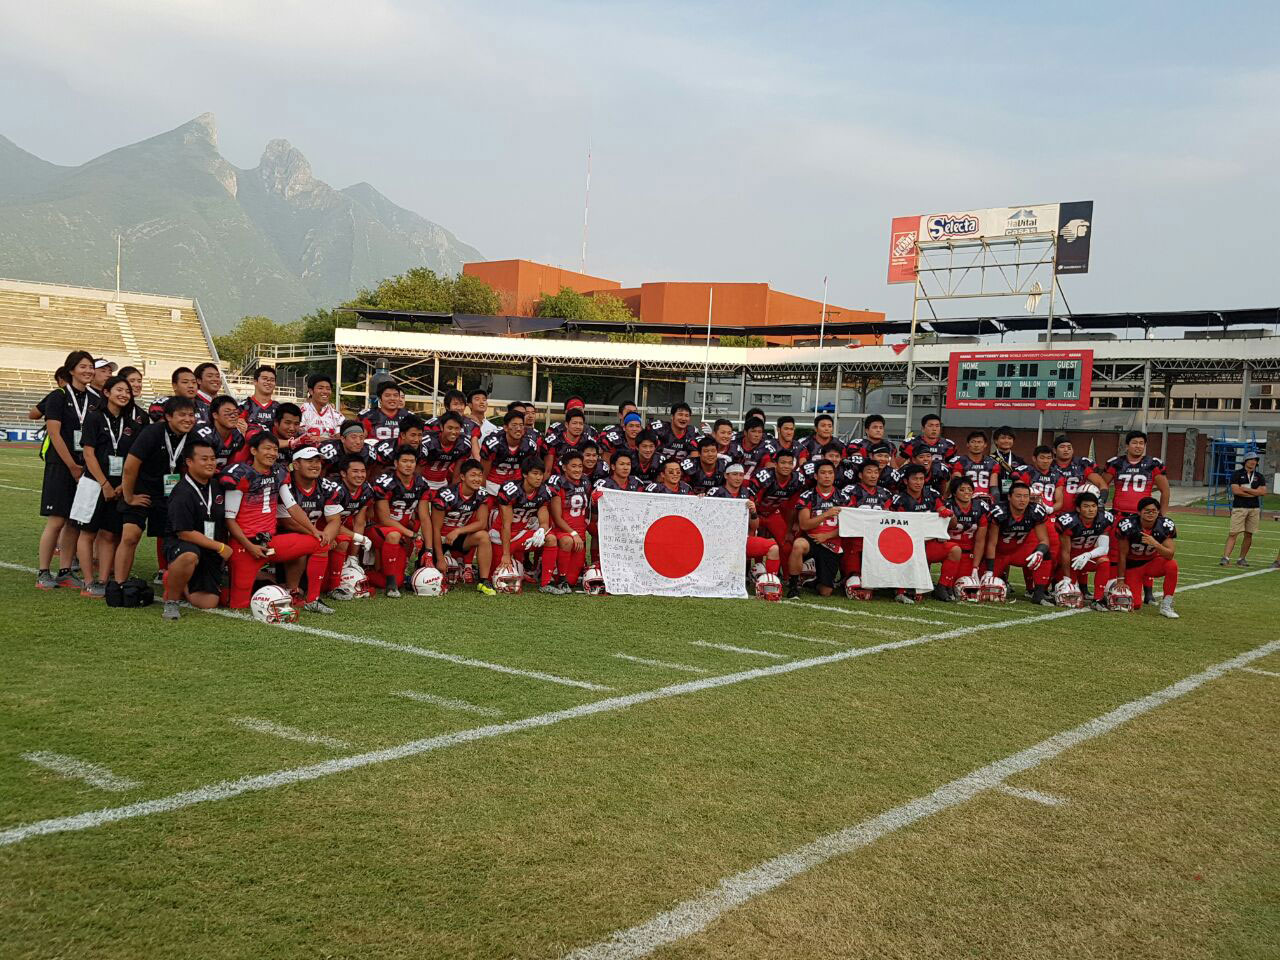 Los seleccionados japoneses al final del juego en el cerro de la Silla